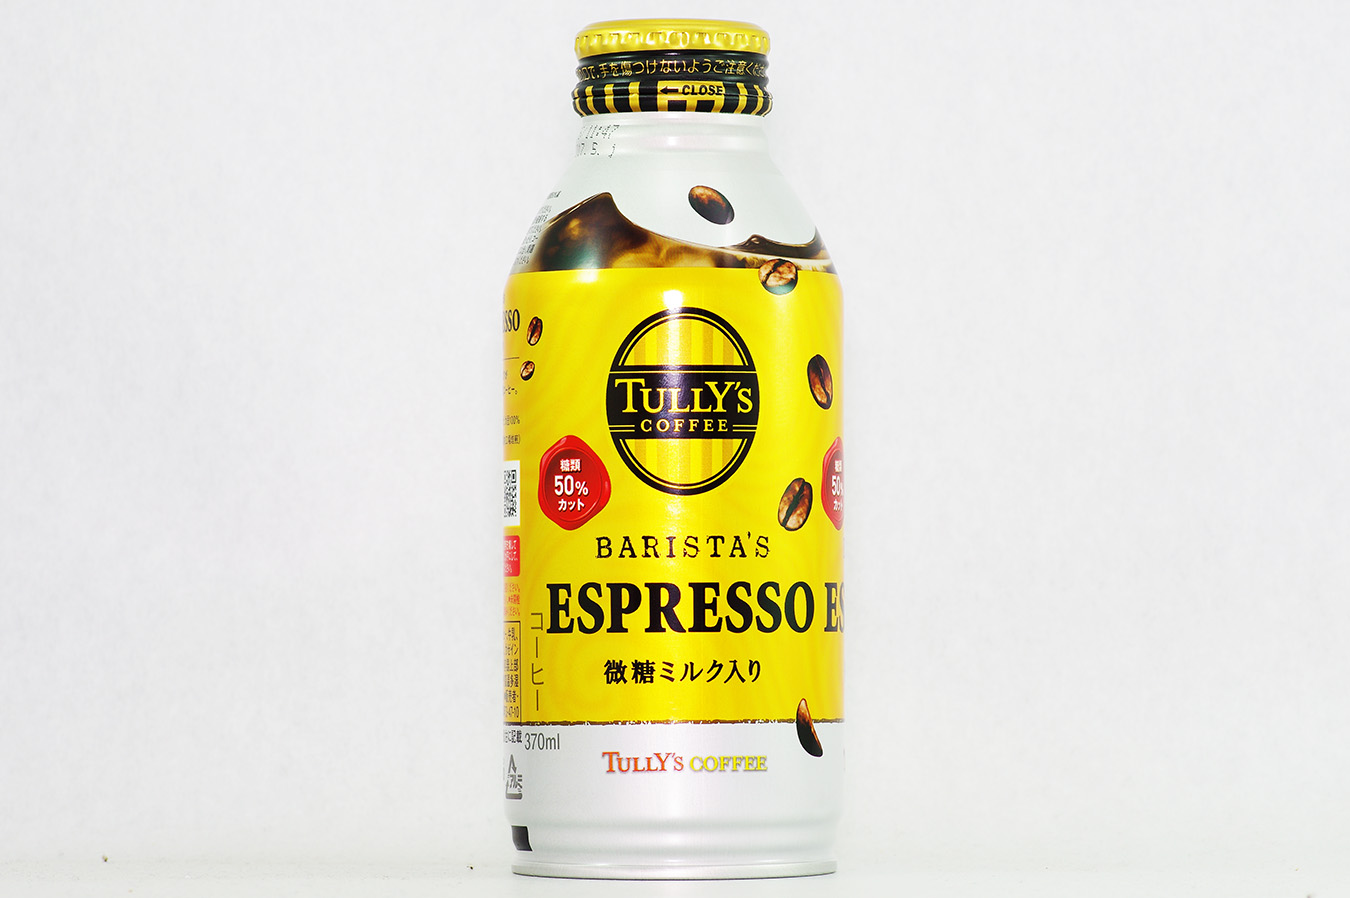 TULLY'S COFFEE BARISTA'S ESPRESSO 2016年